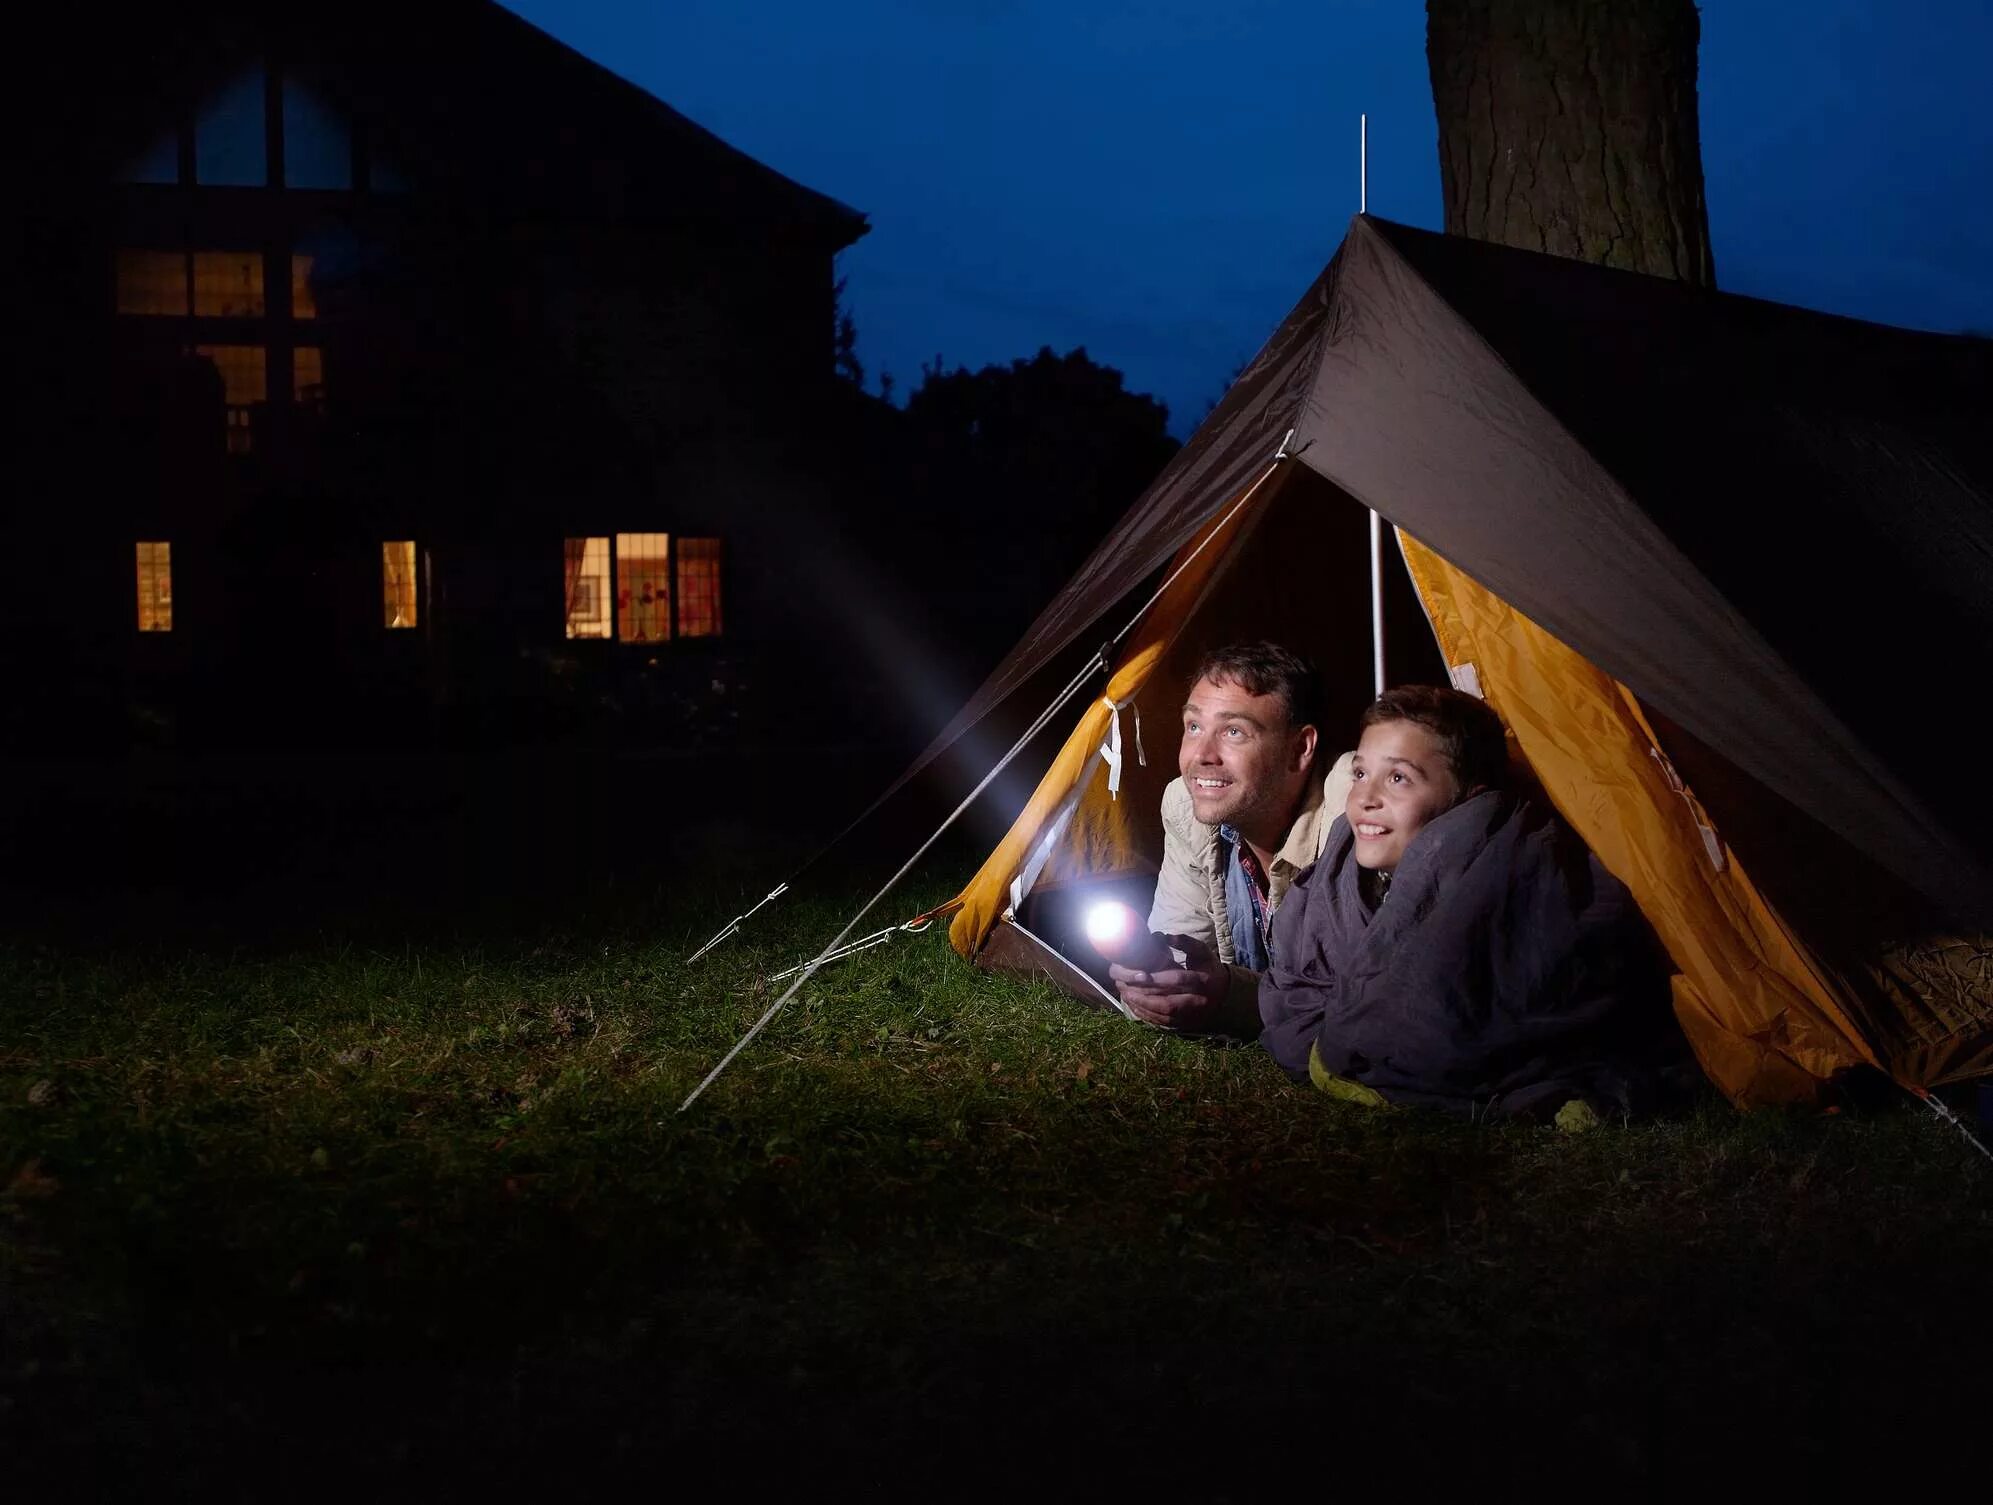 Look at the camp. Палатка в лесу ночью. Освещение в палатку. Фонарик для палатки. Семья в палатке.